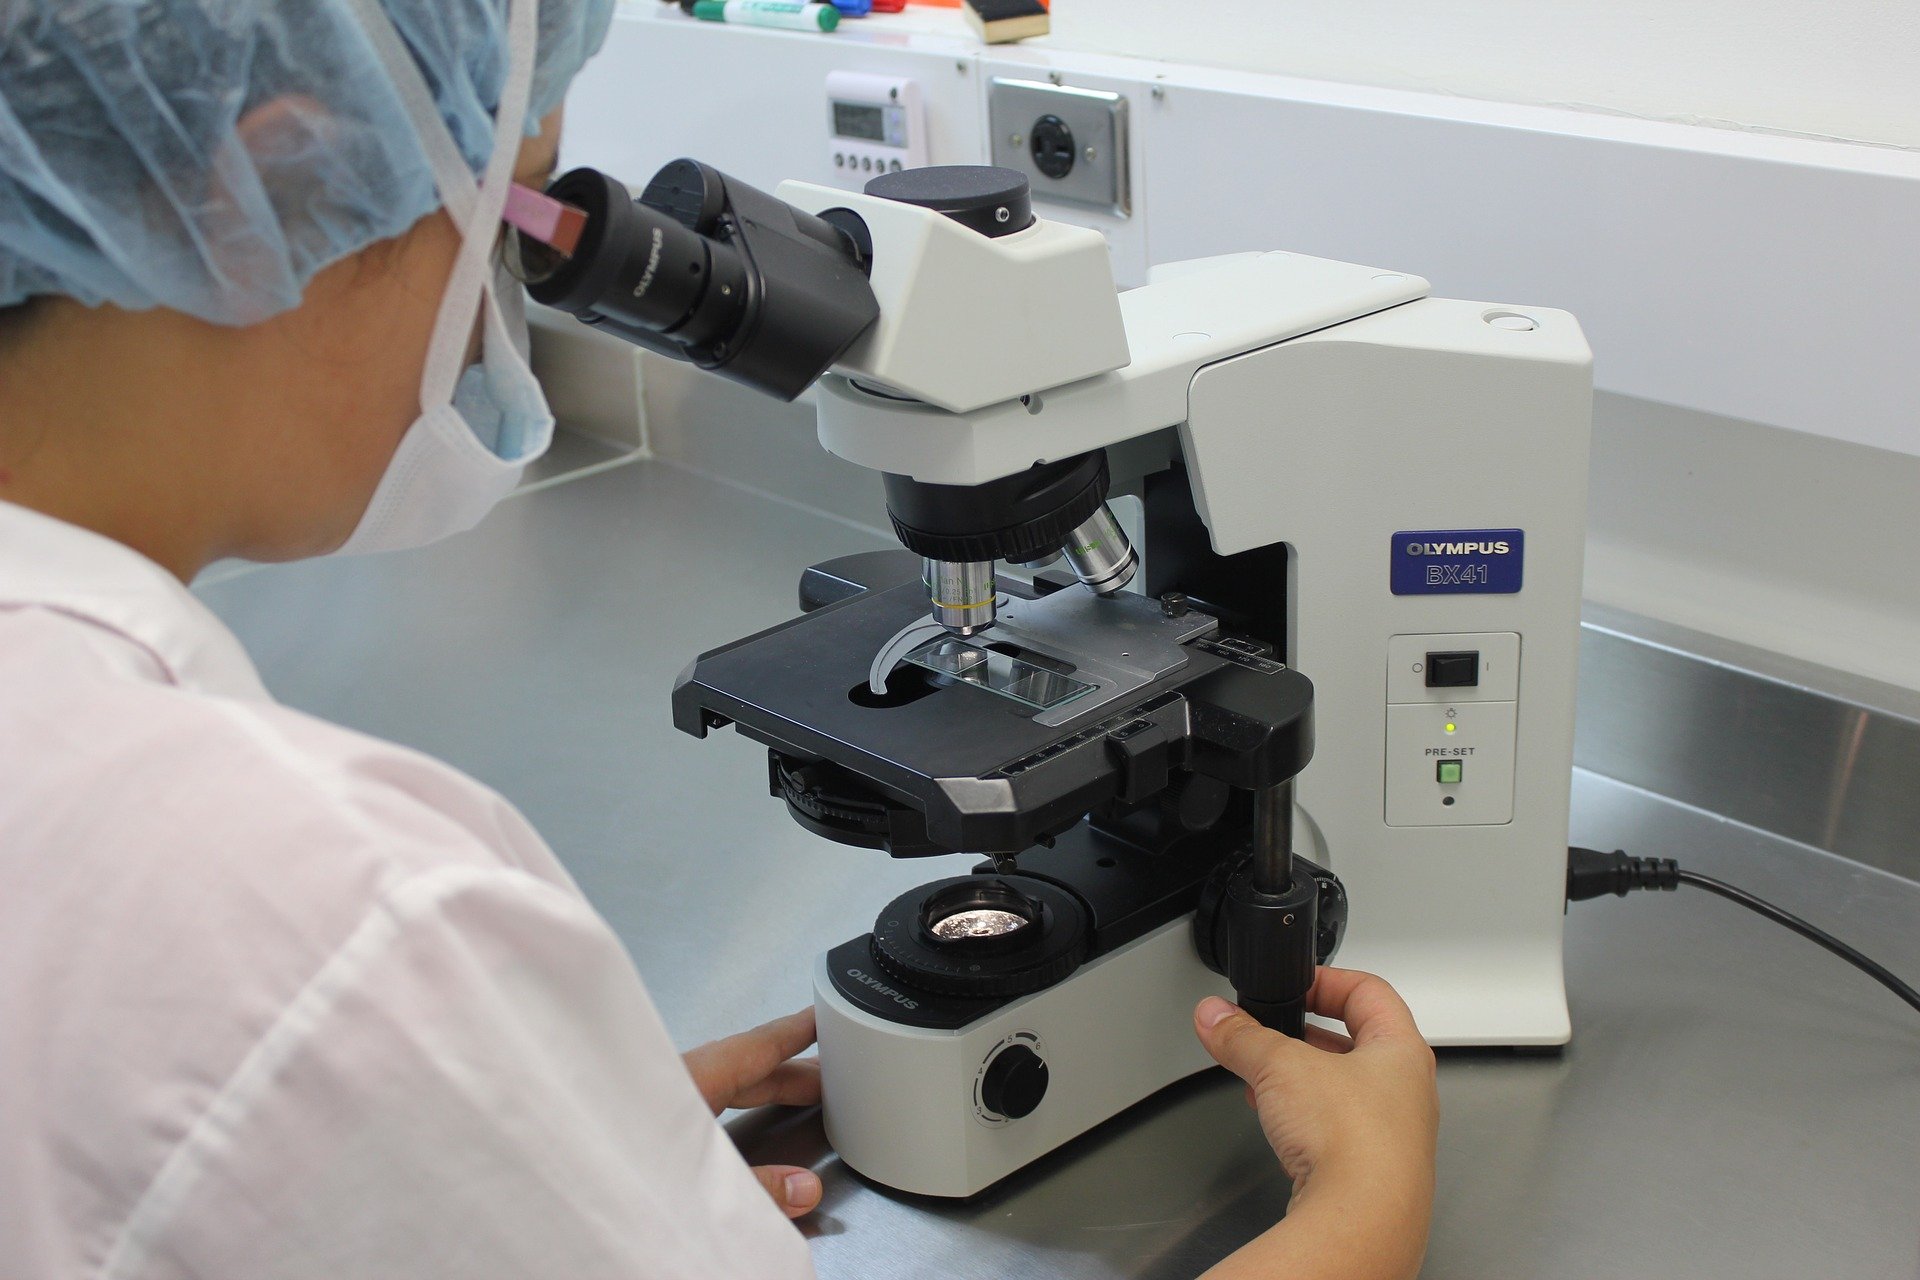 ТУ/э открывает лабораторию электронной микроскопии